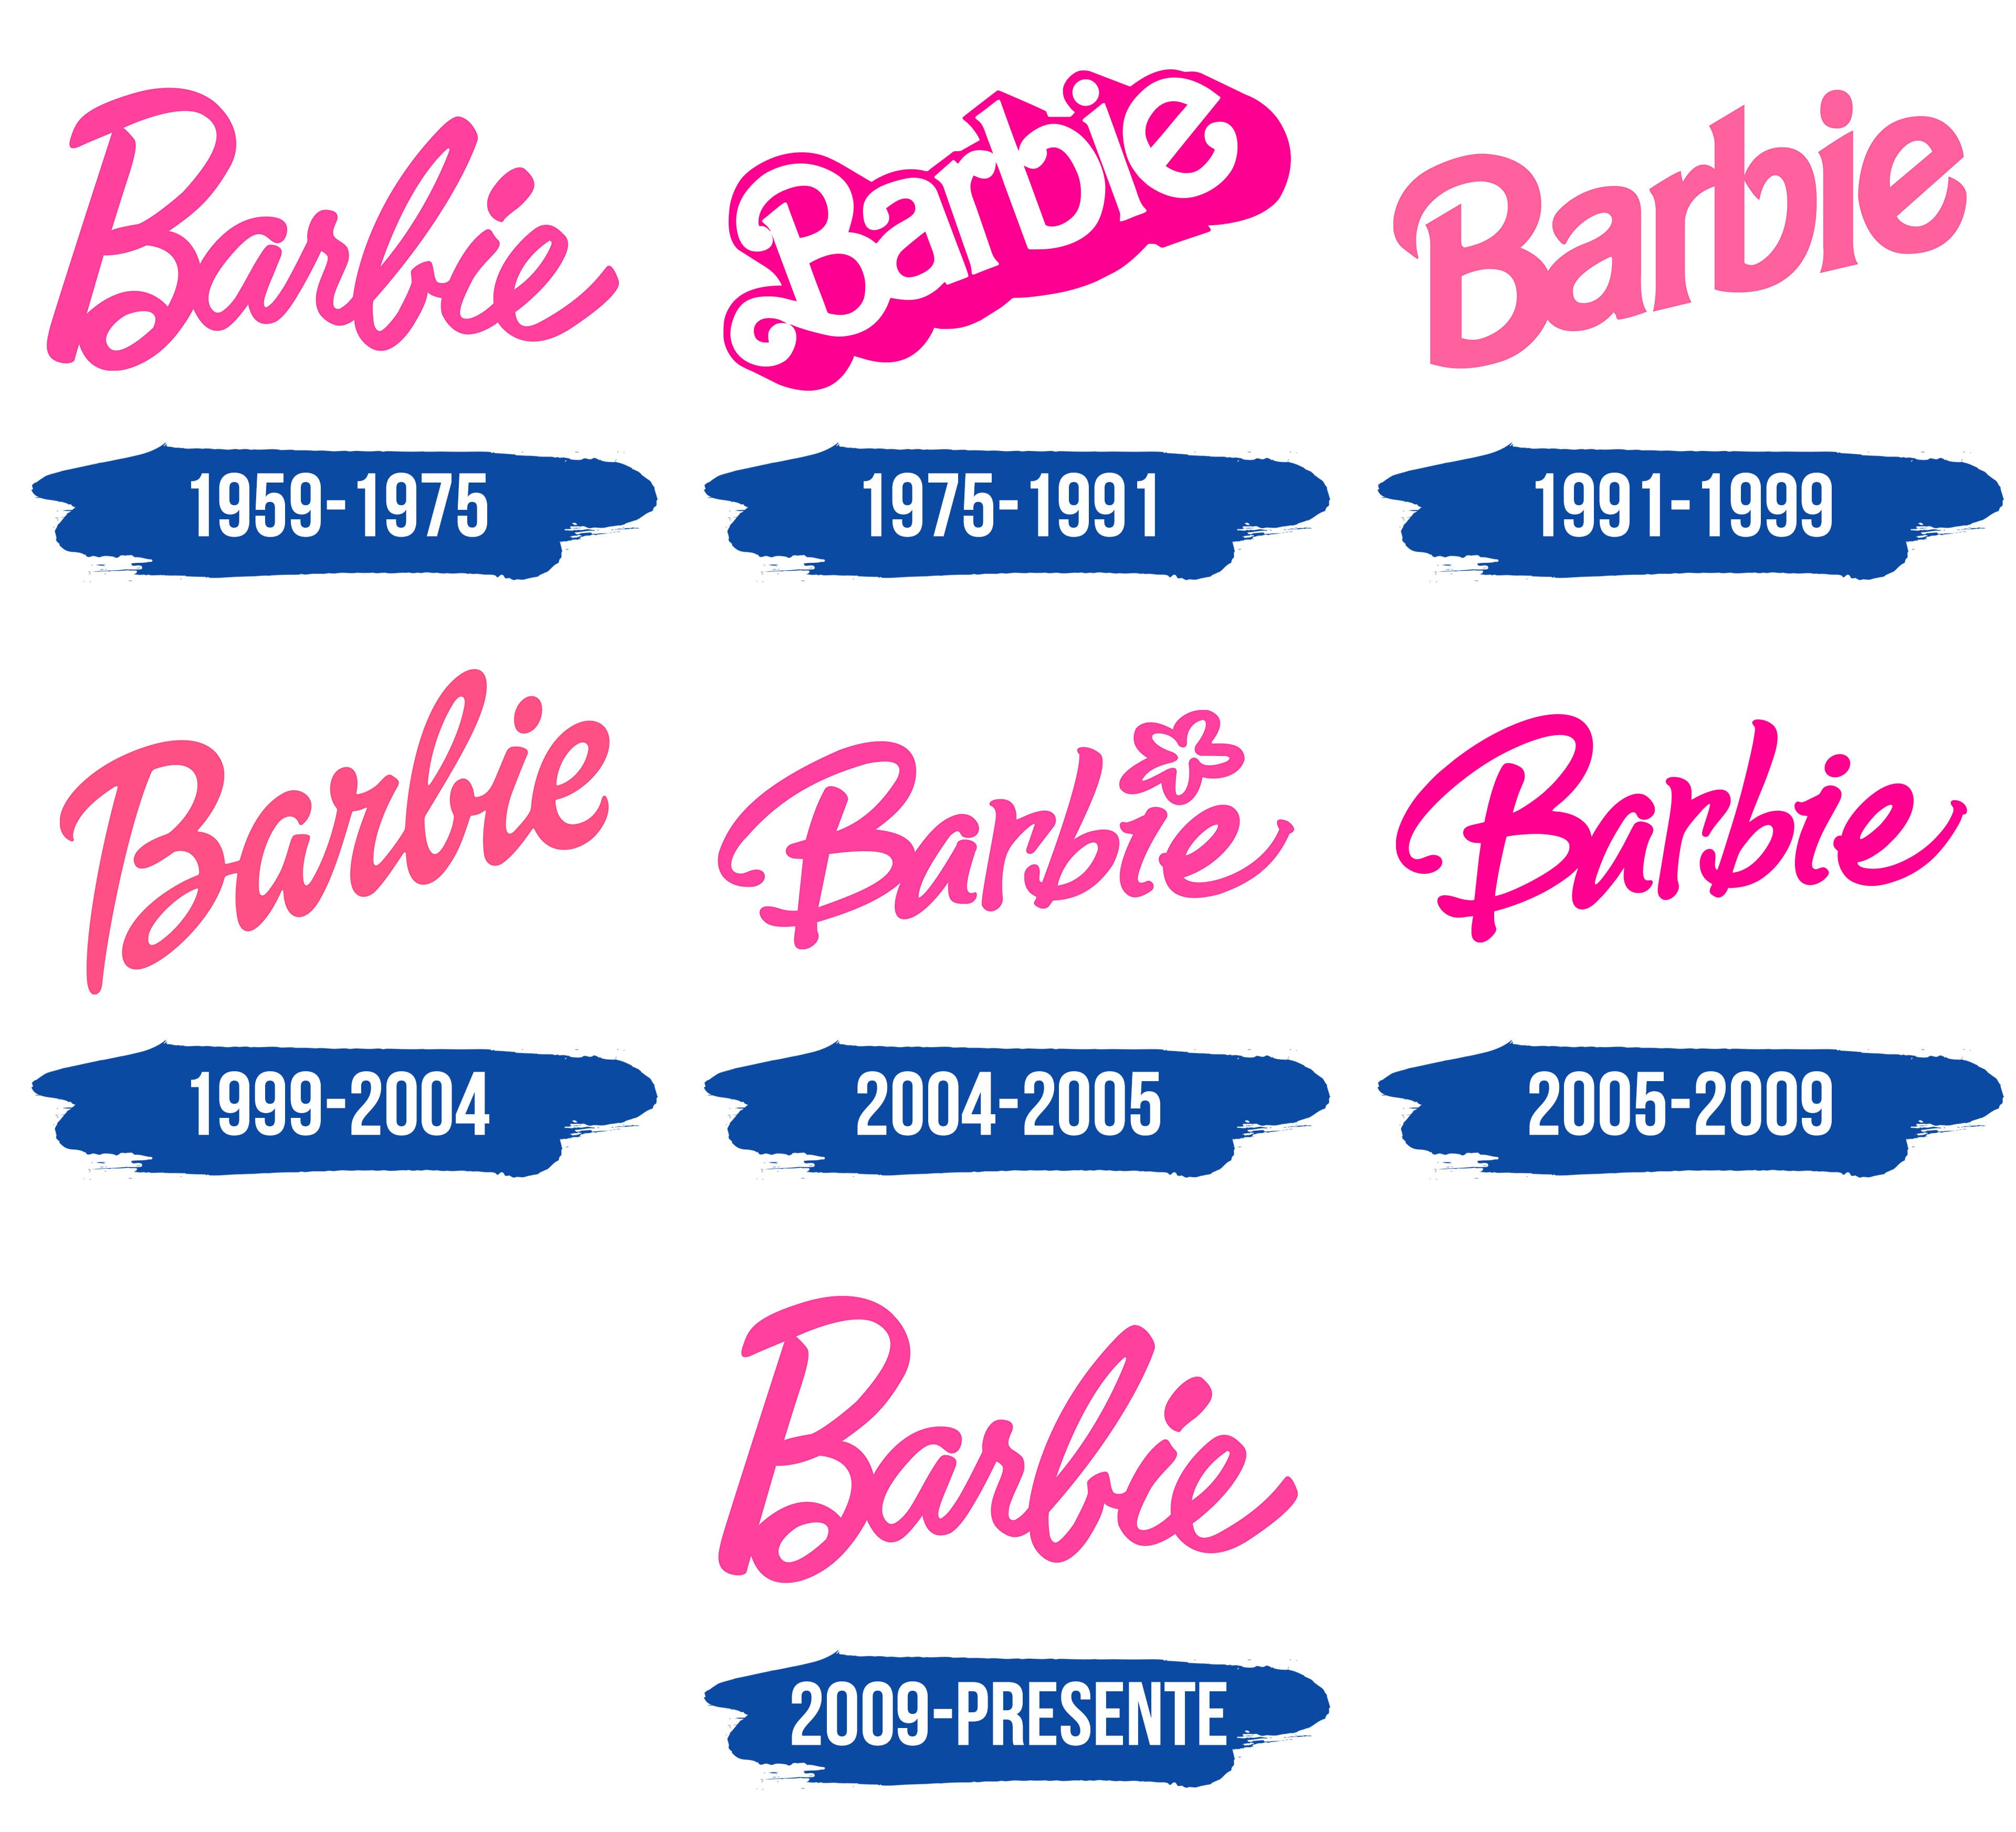 Barbie Logo y símbolo significado historia PNG marca